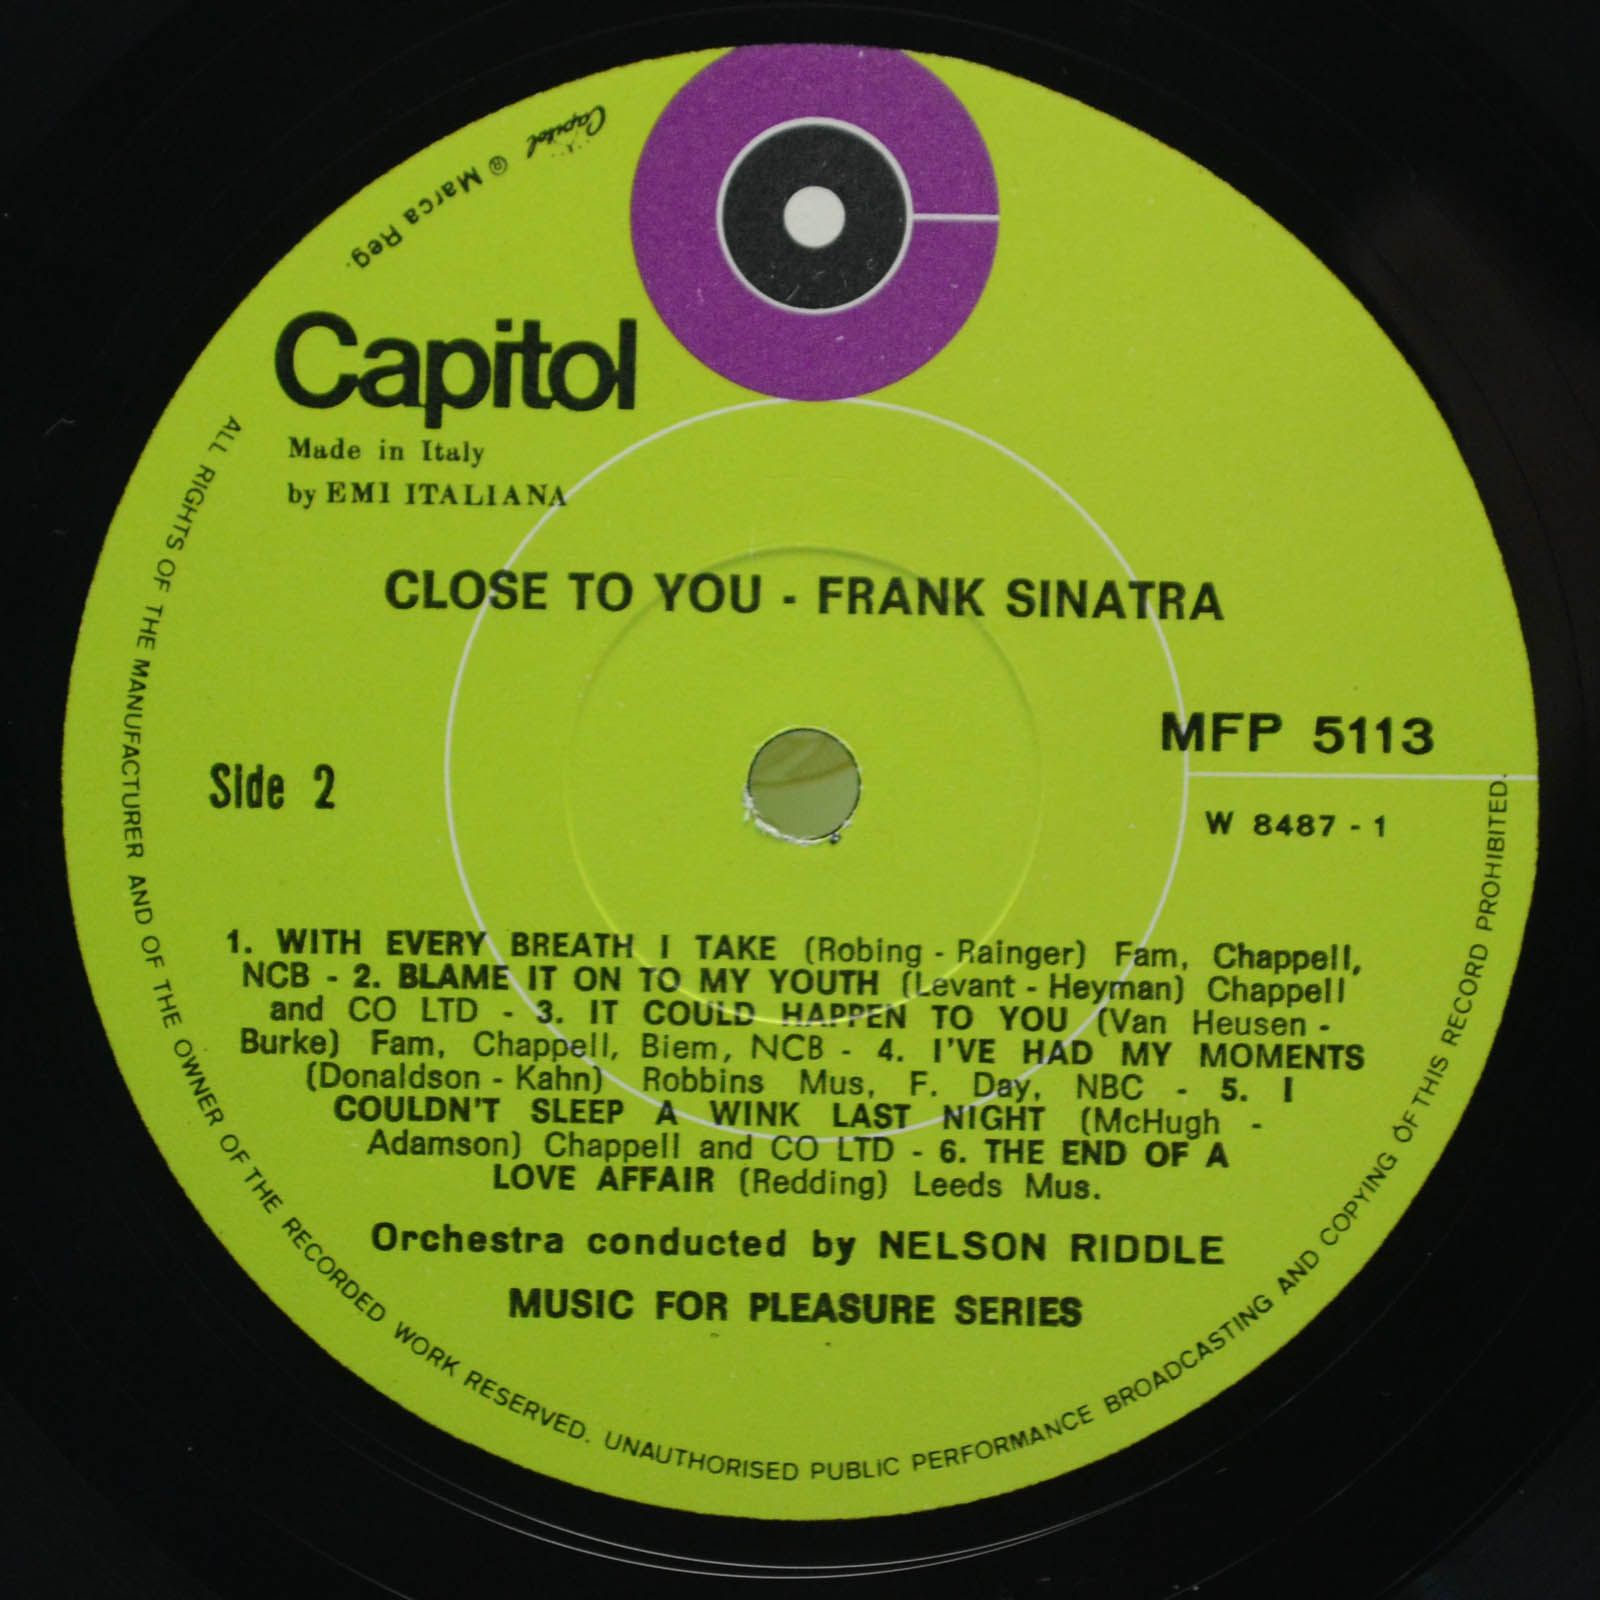 Frank Sinatra — Close To You, 1970